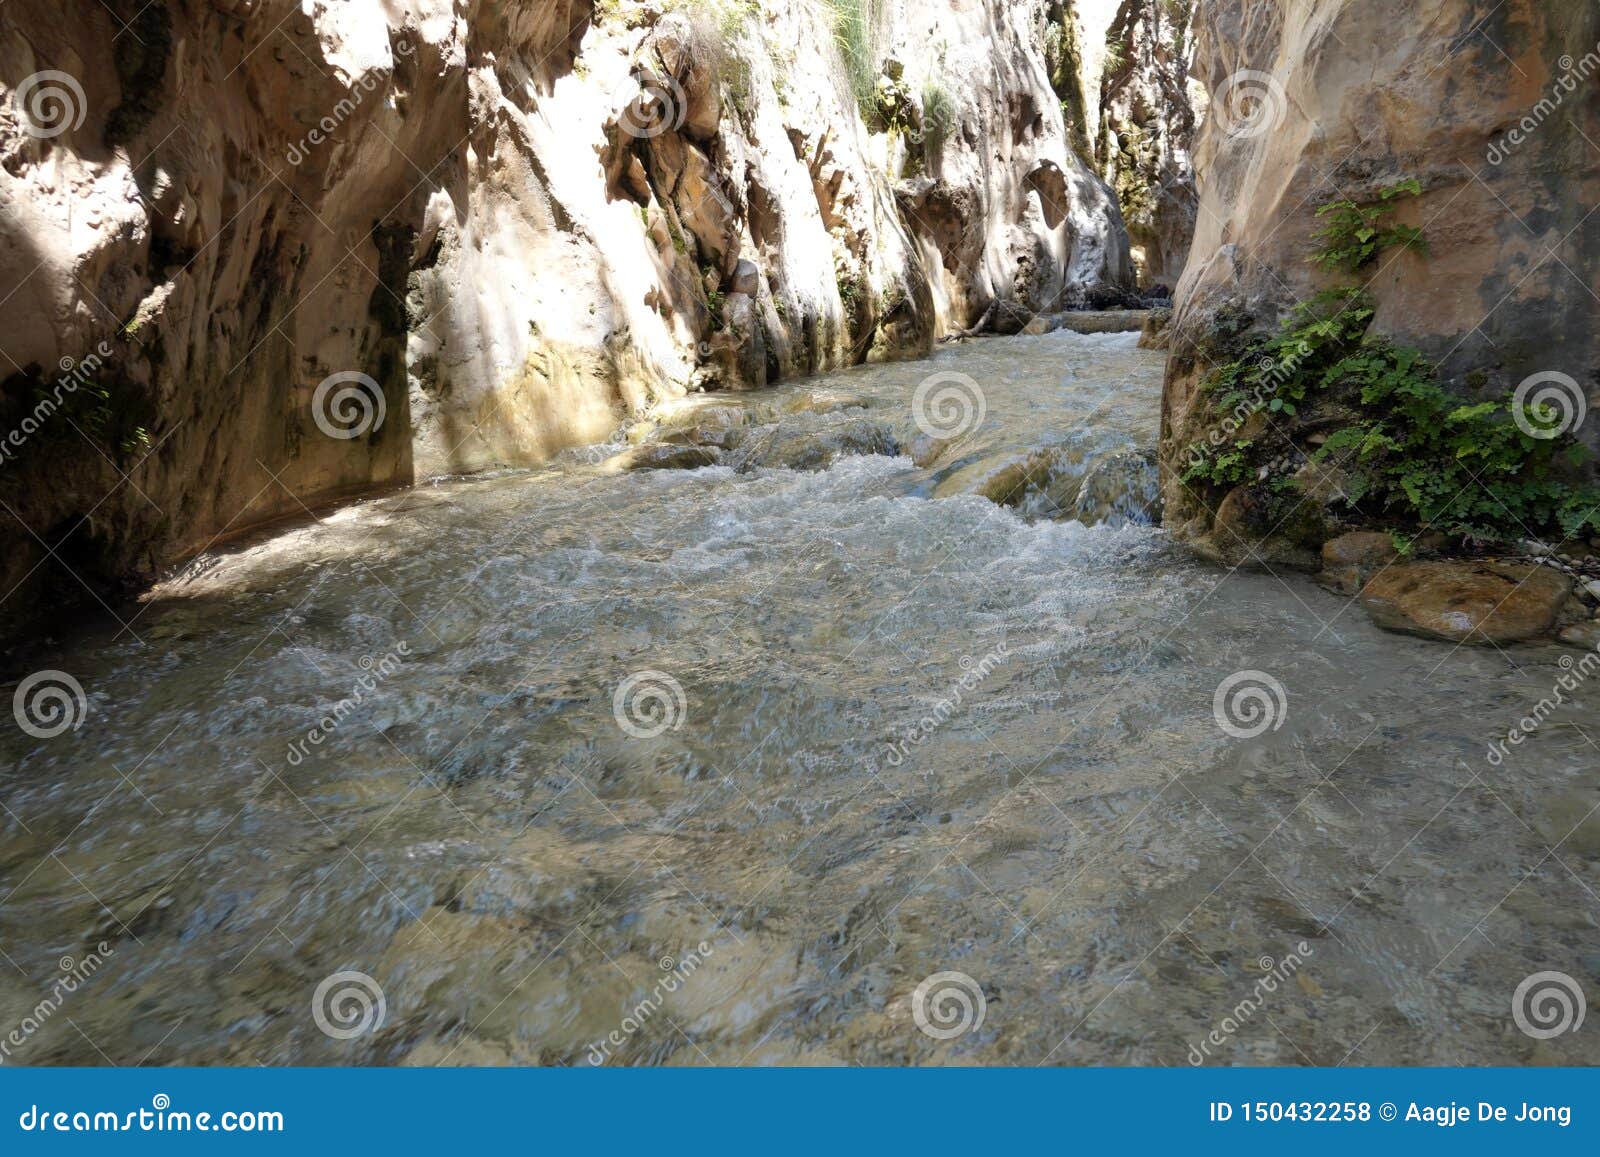 rio chillar in nerja in andalusia, spain